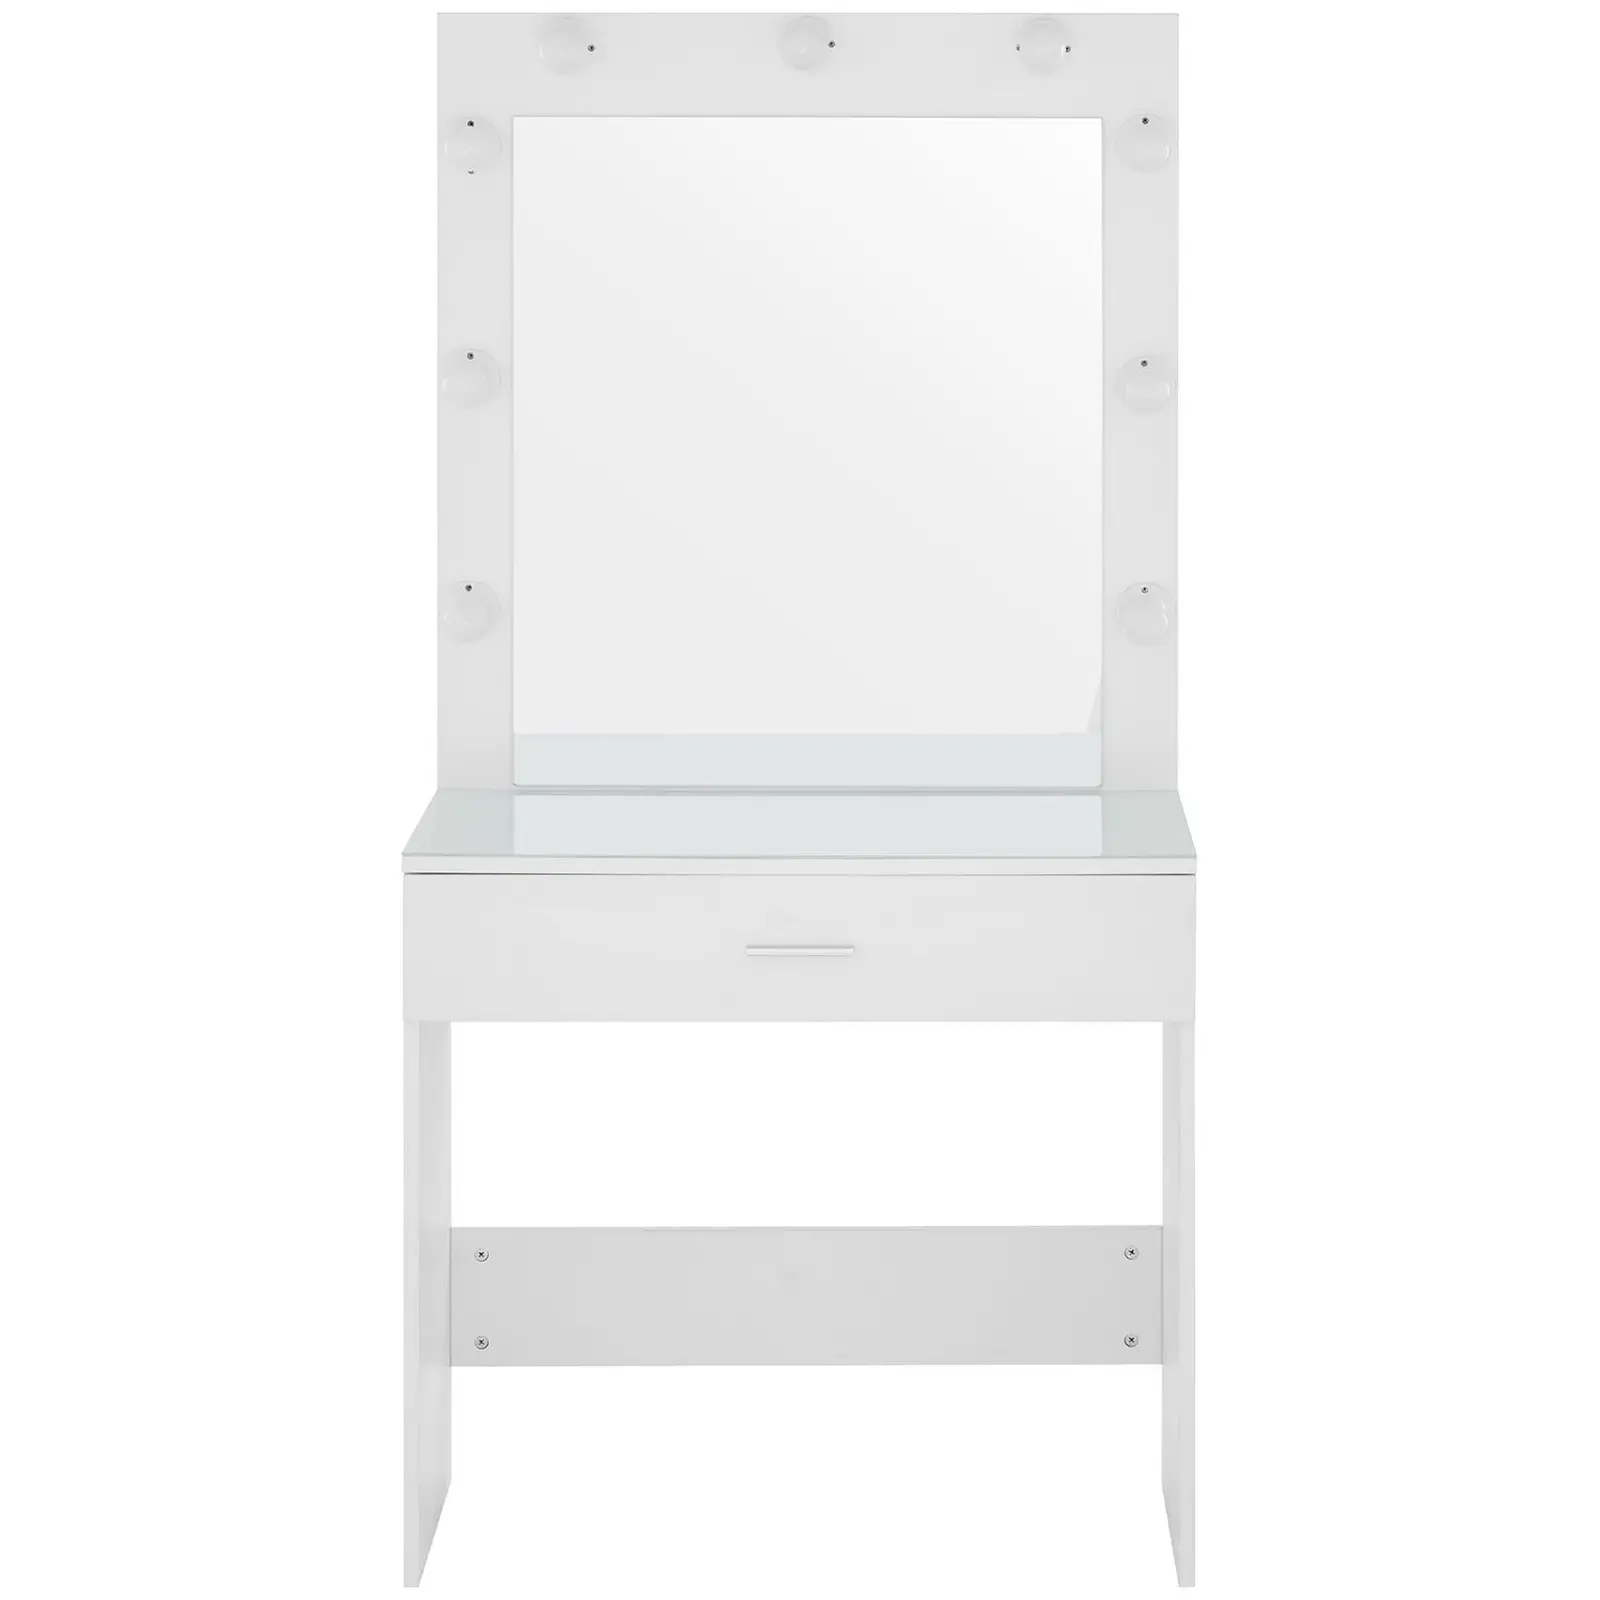  Schminktisch mit Spiegel und Licht - 80 x 40 x 160 cm - weiß